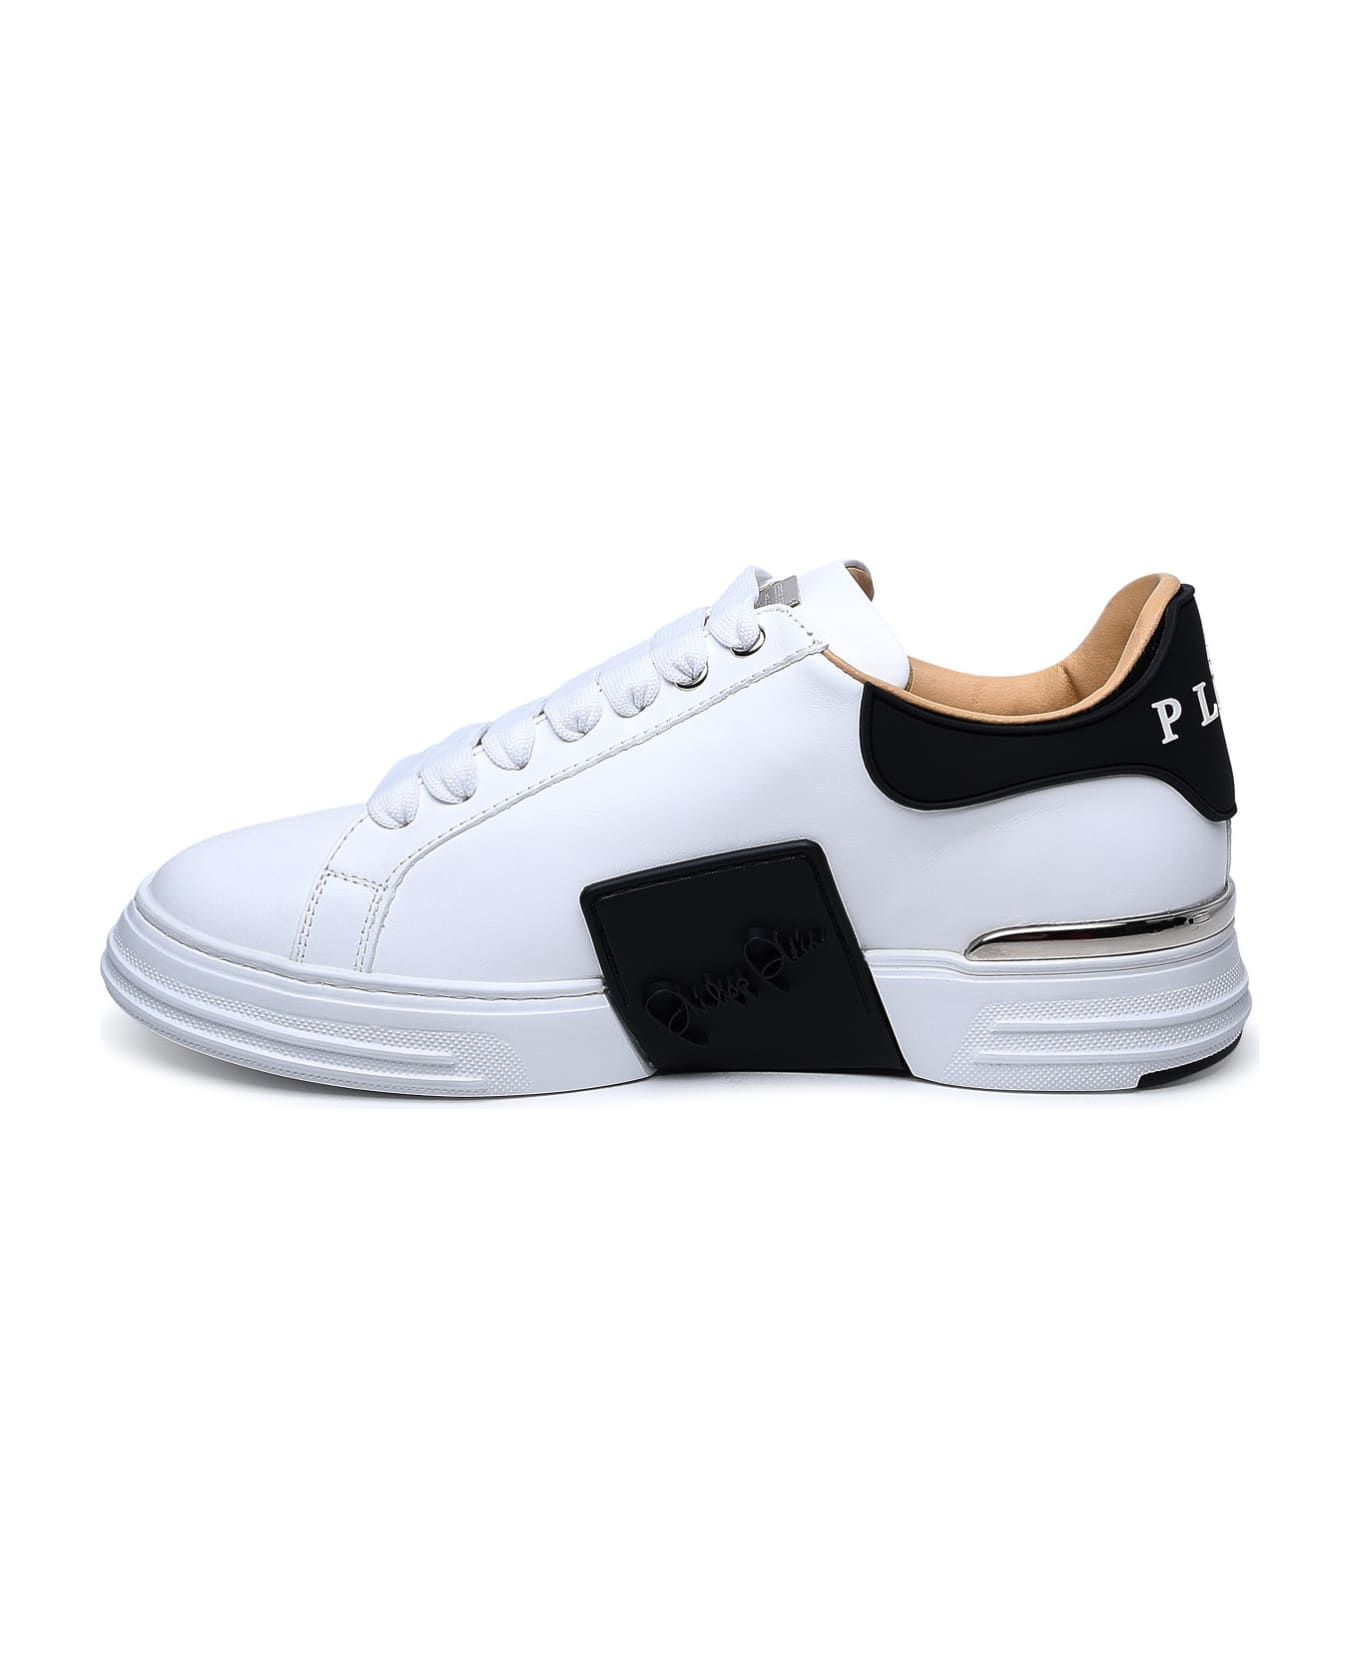 Philipp Plein White Leather Phantom Sneakers - White